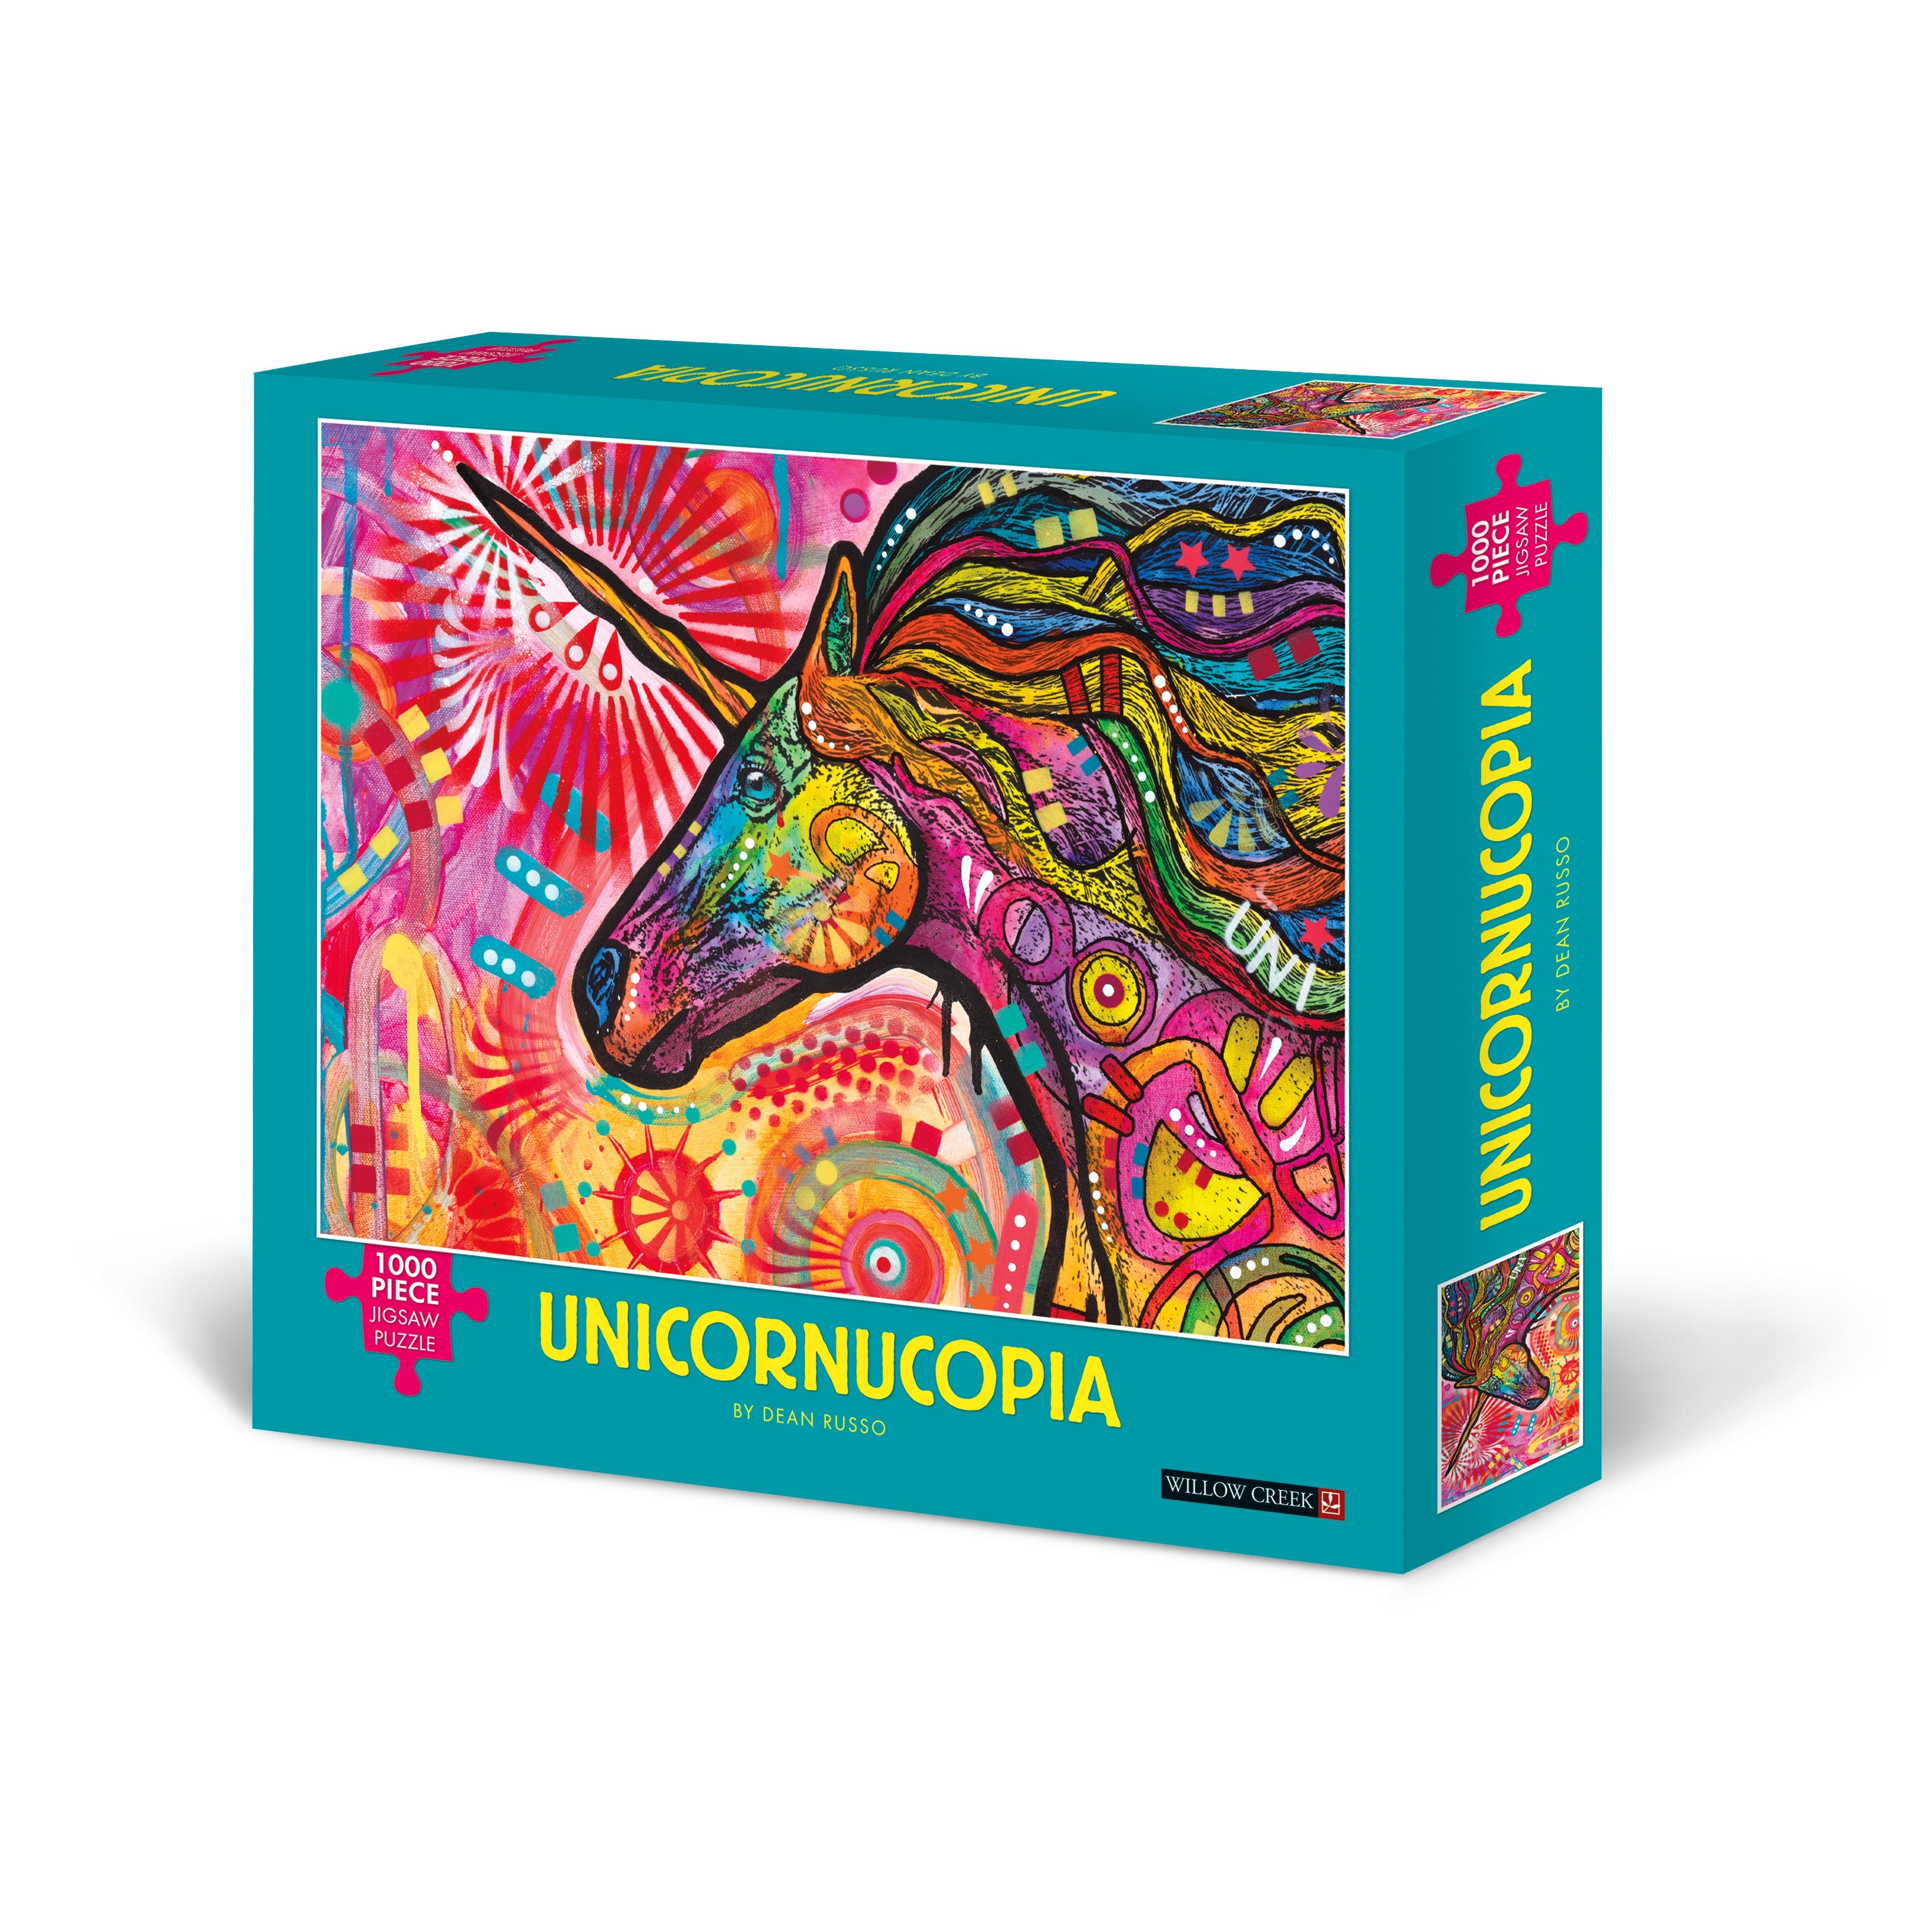 Unicornicopia 1000 Piece - Jigsaw Puzzle